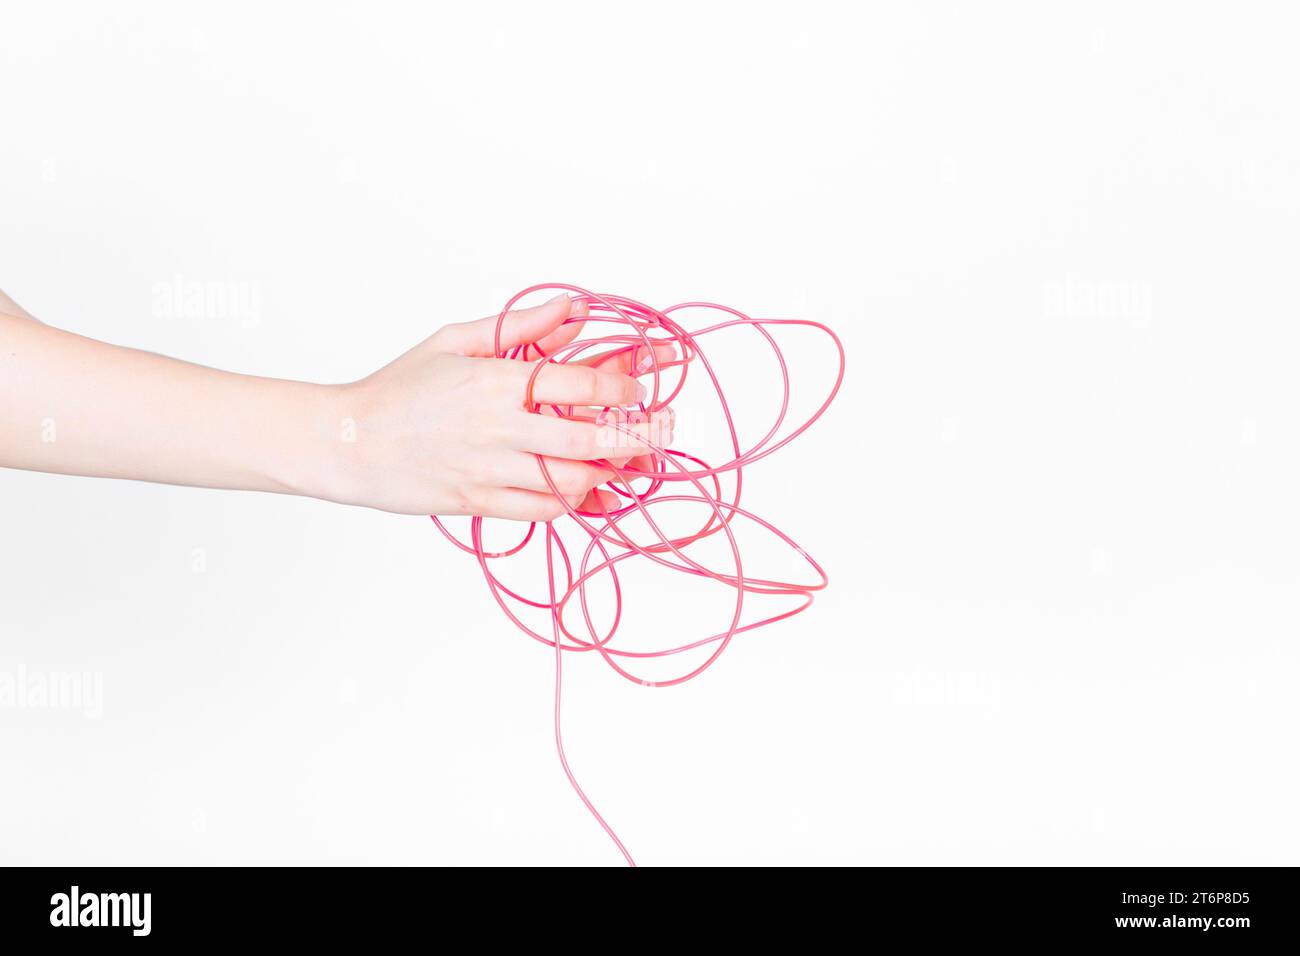 Menschliche Hand mit verwickeltem rotem Draht Stockfoto